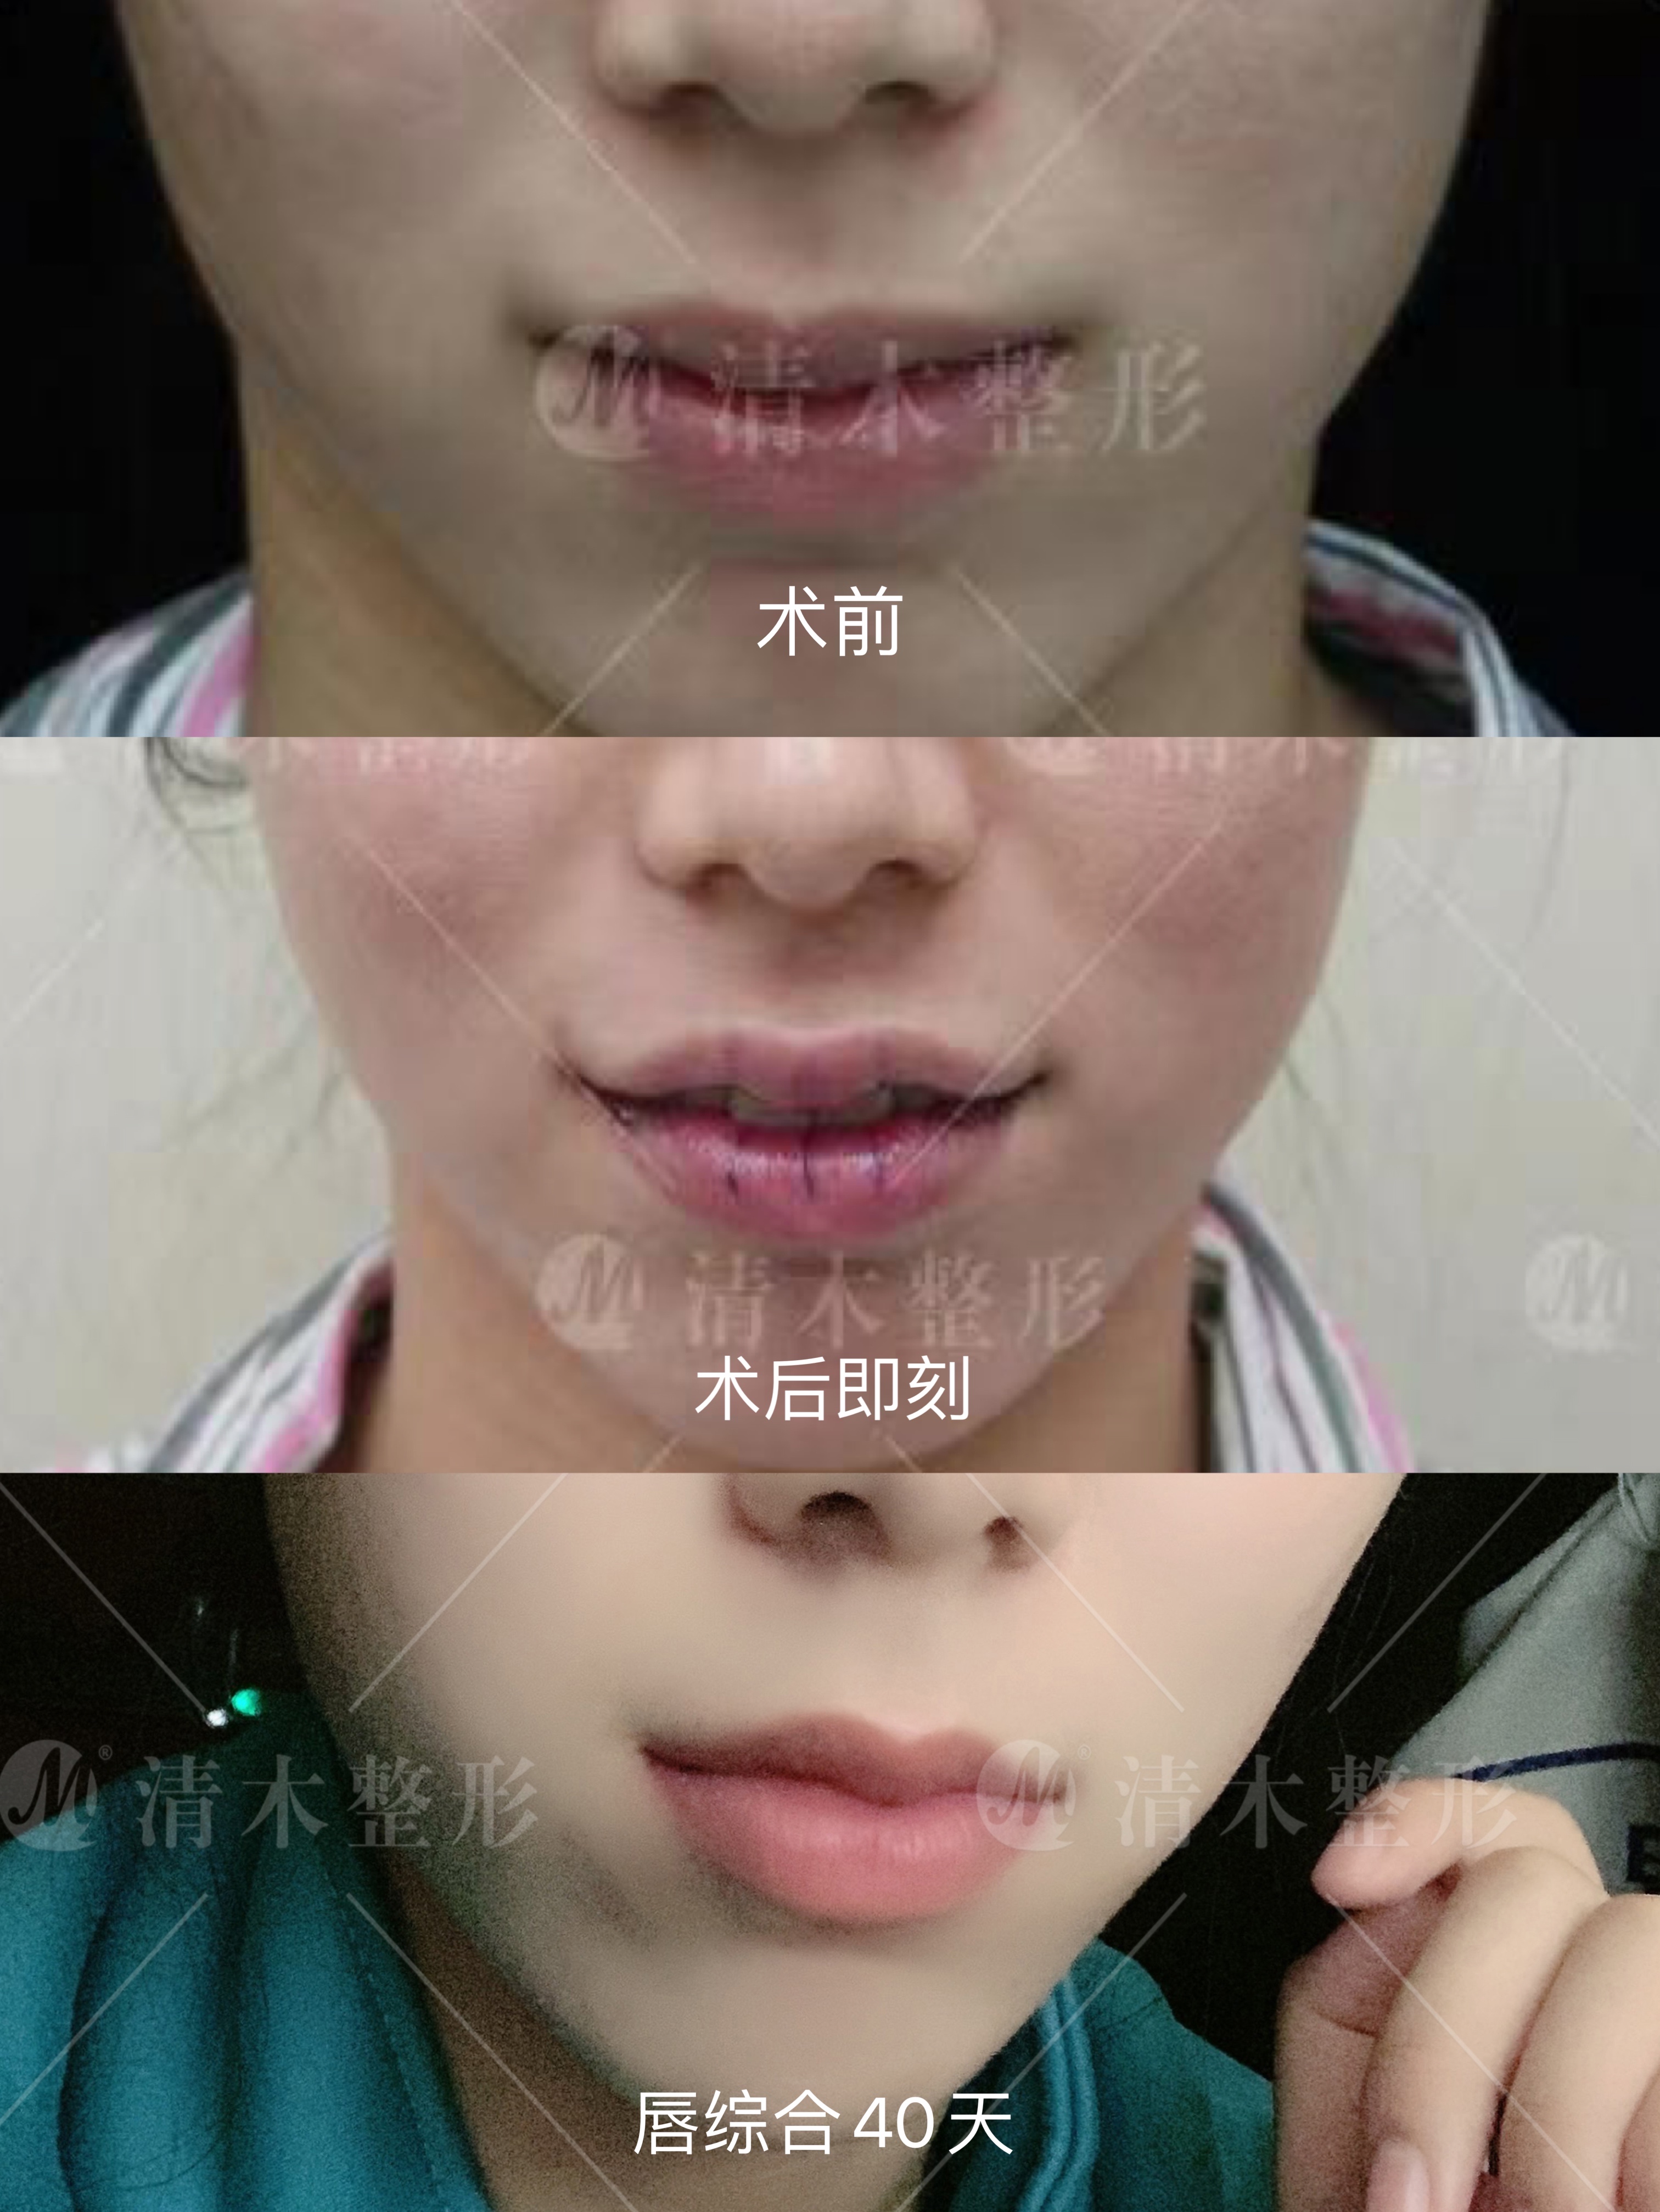 上海张玲医生唇部整形术改善唇形 - 知乎